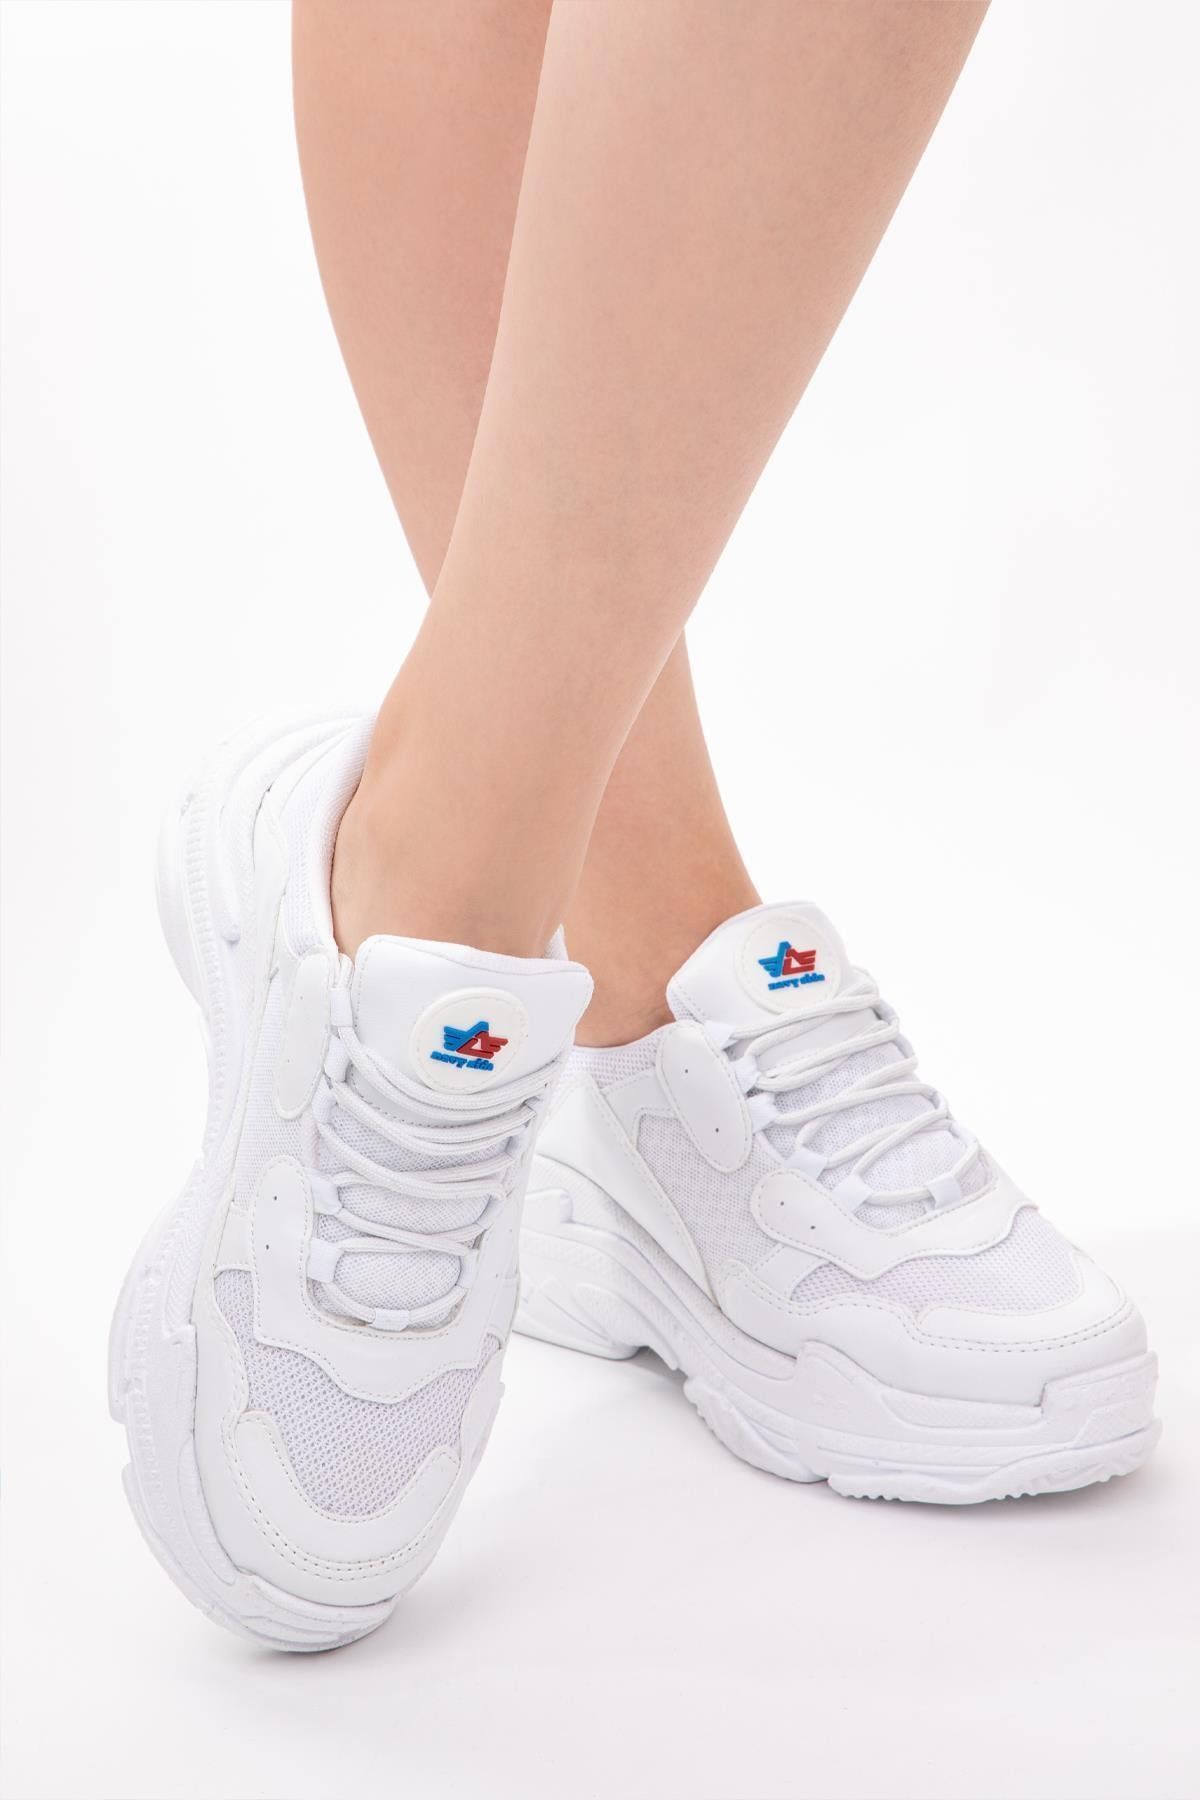 NAVYSIDE Kadın Sneaker Spor Ayakkabı Memory Hafıza Yüksek Tabanlı Yürüyüş Ayakkabısı Dar Kalıp Beyaz Siyah